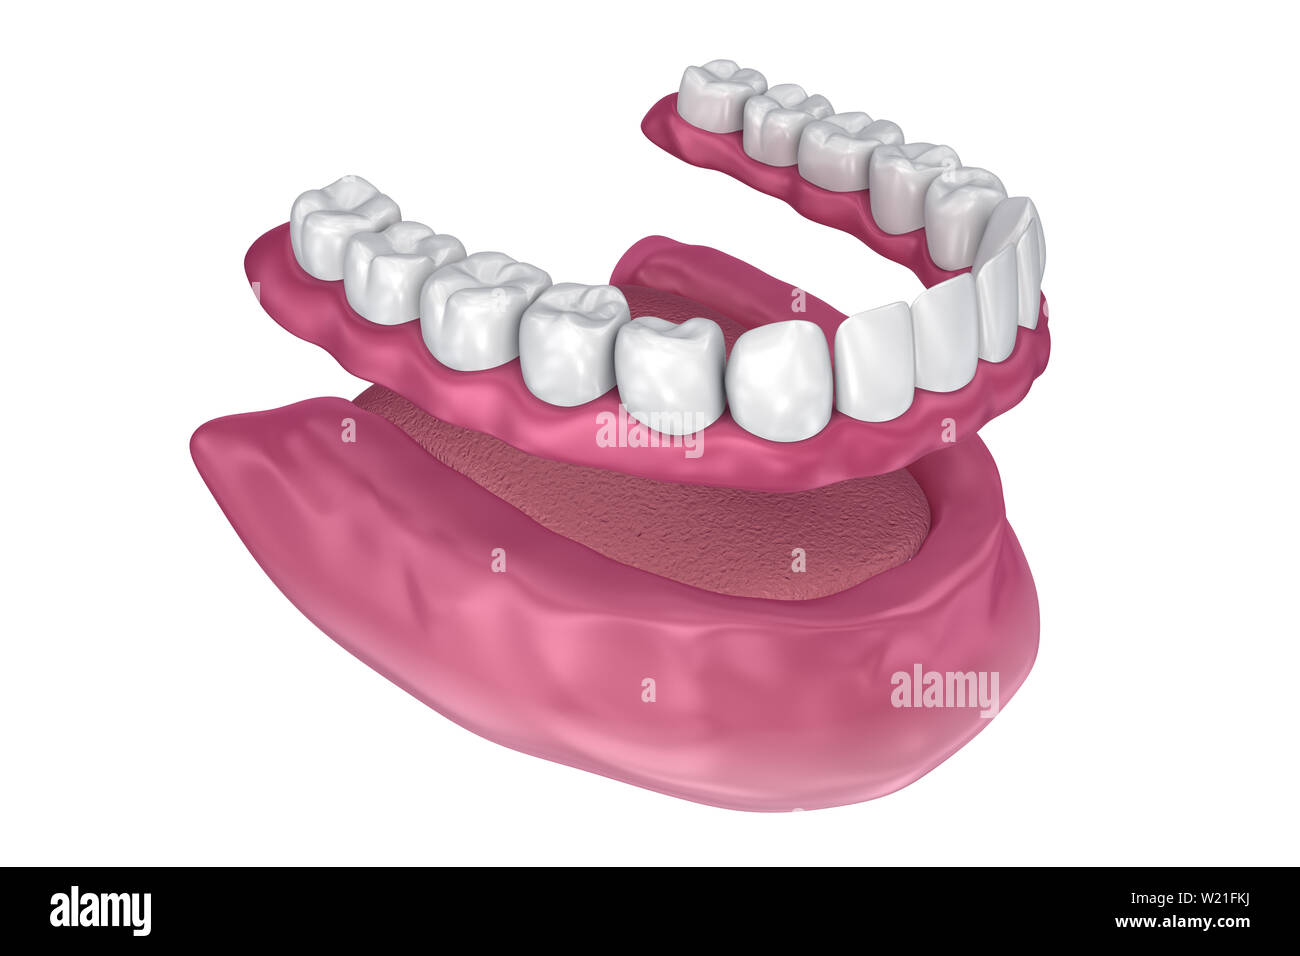 Toutes les dents manquantes - Prothèse complète amovible. 3D illustration Banque D'Images